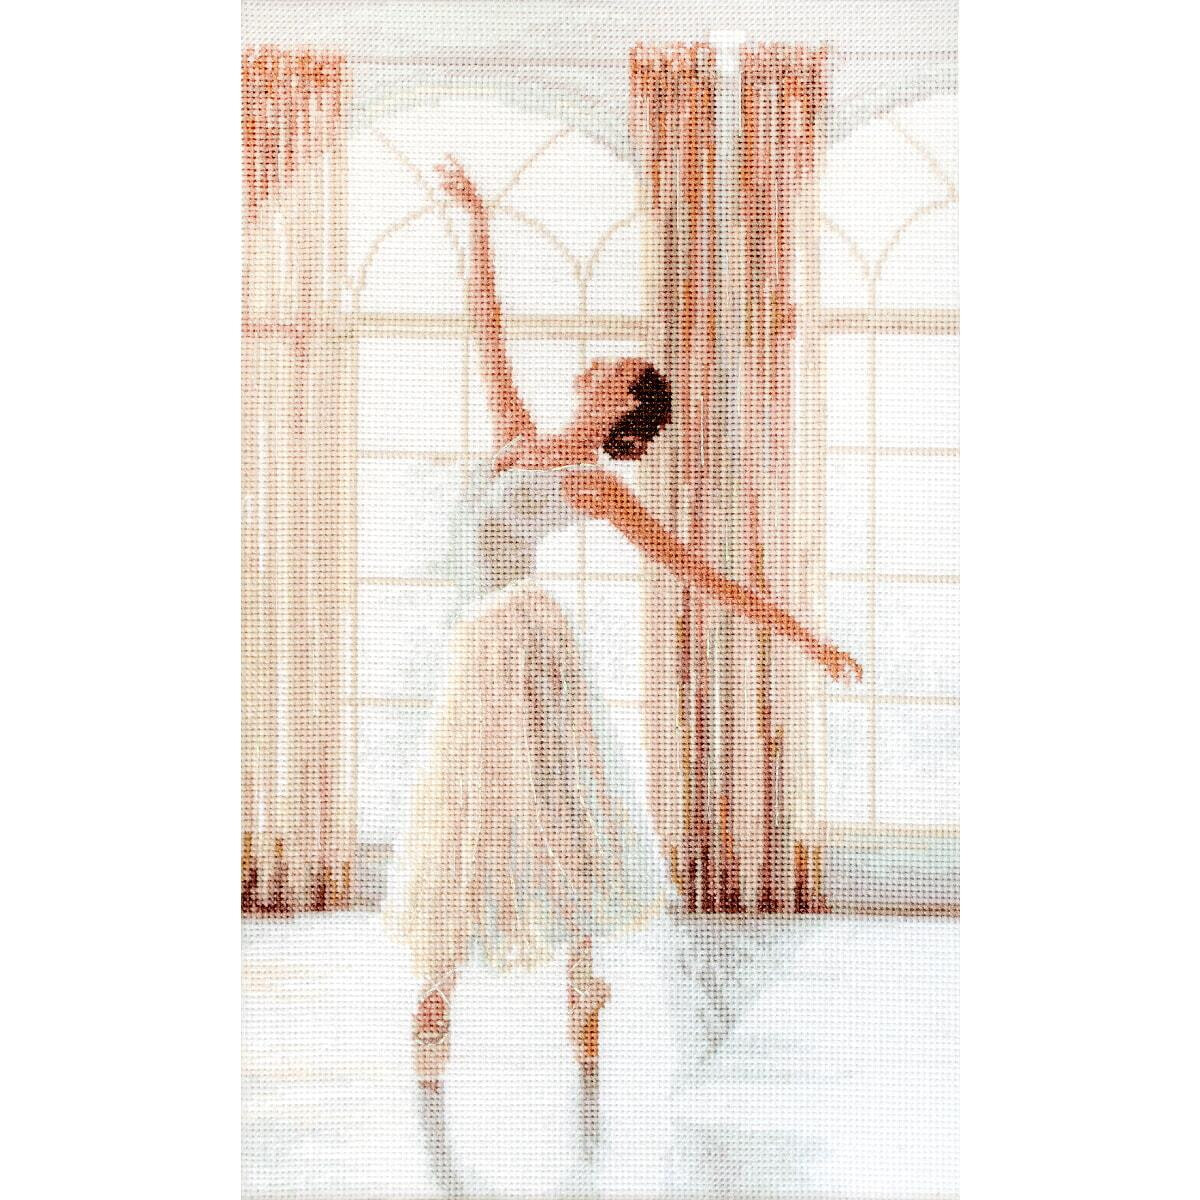 A ballerina in a white tutu dances gracefully in a...